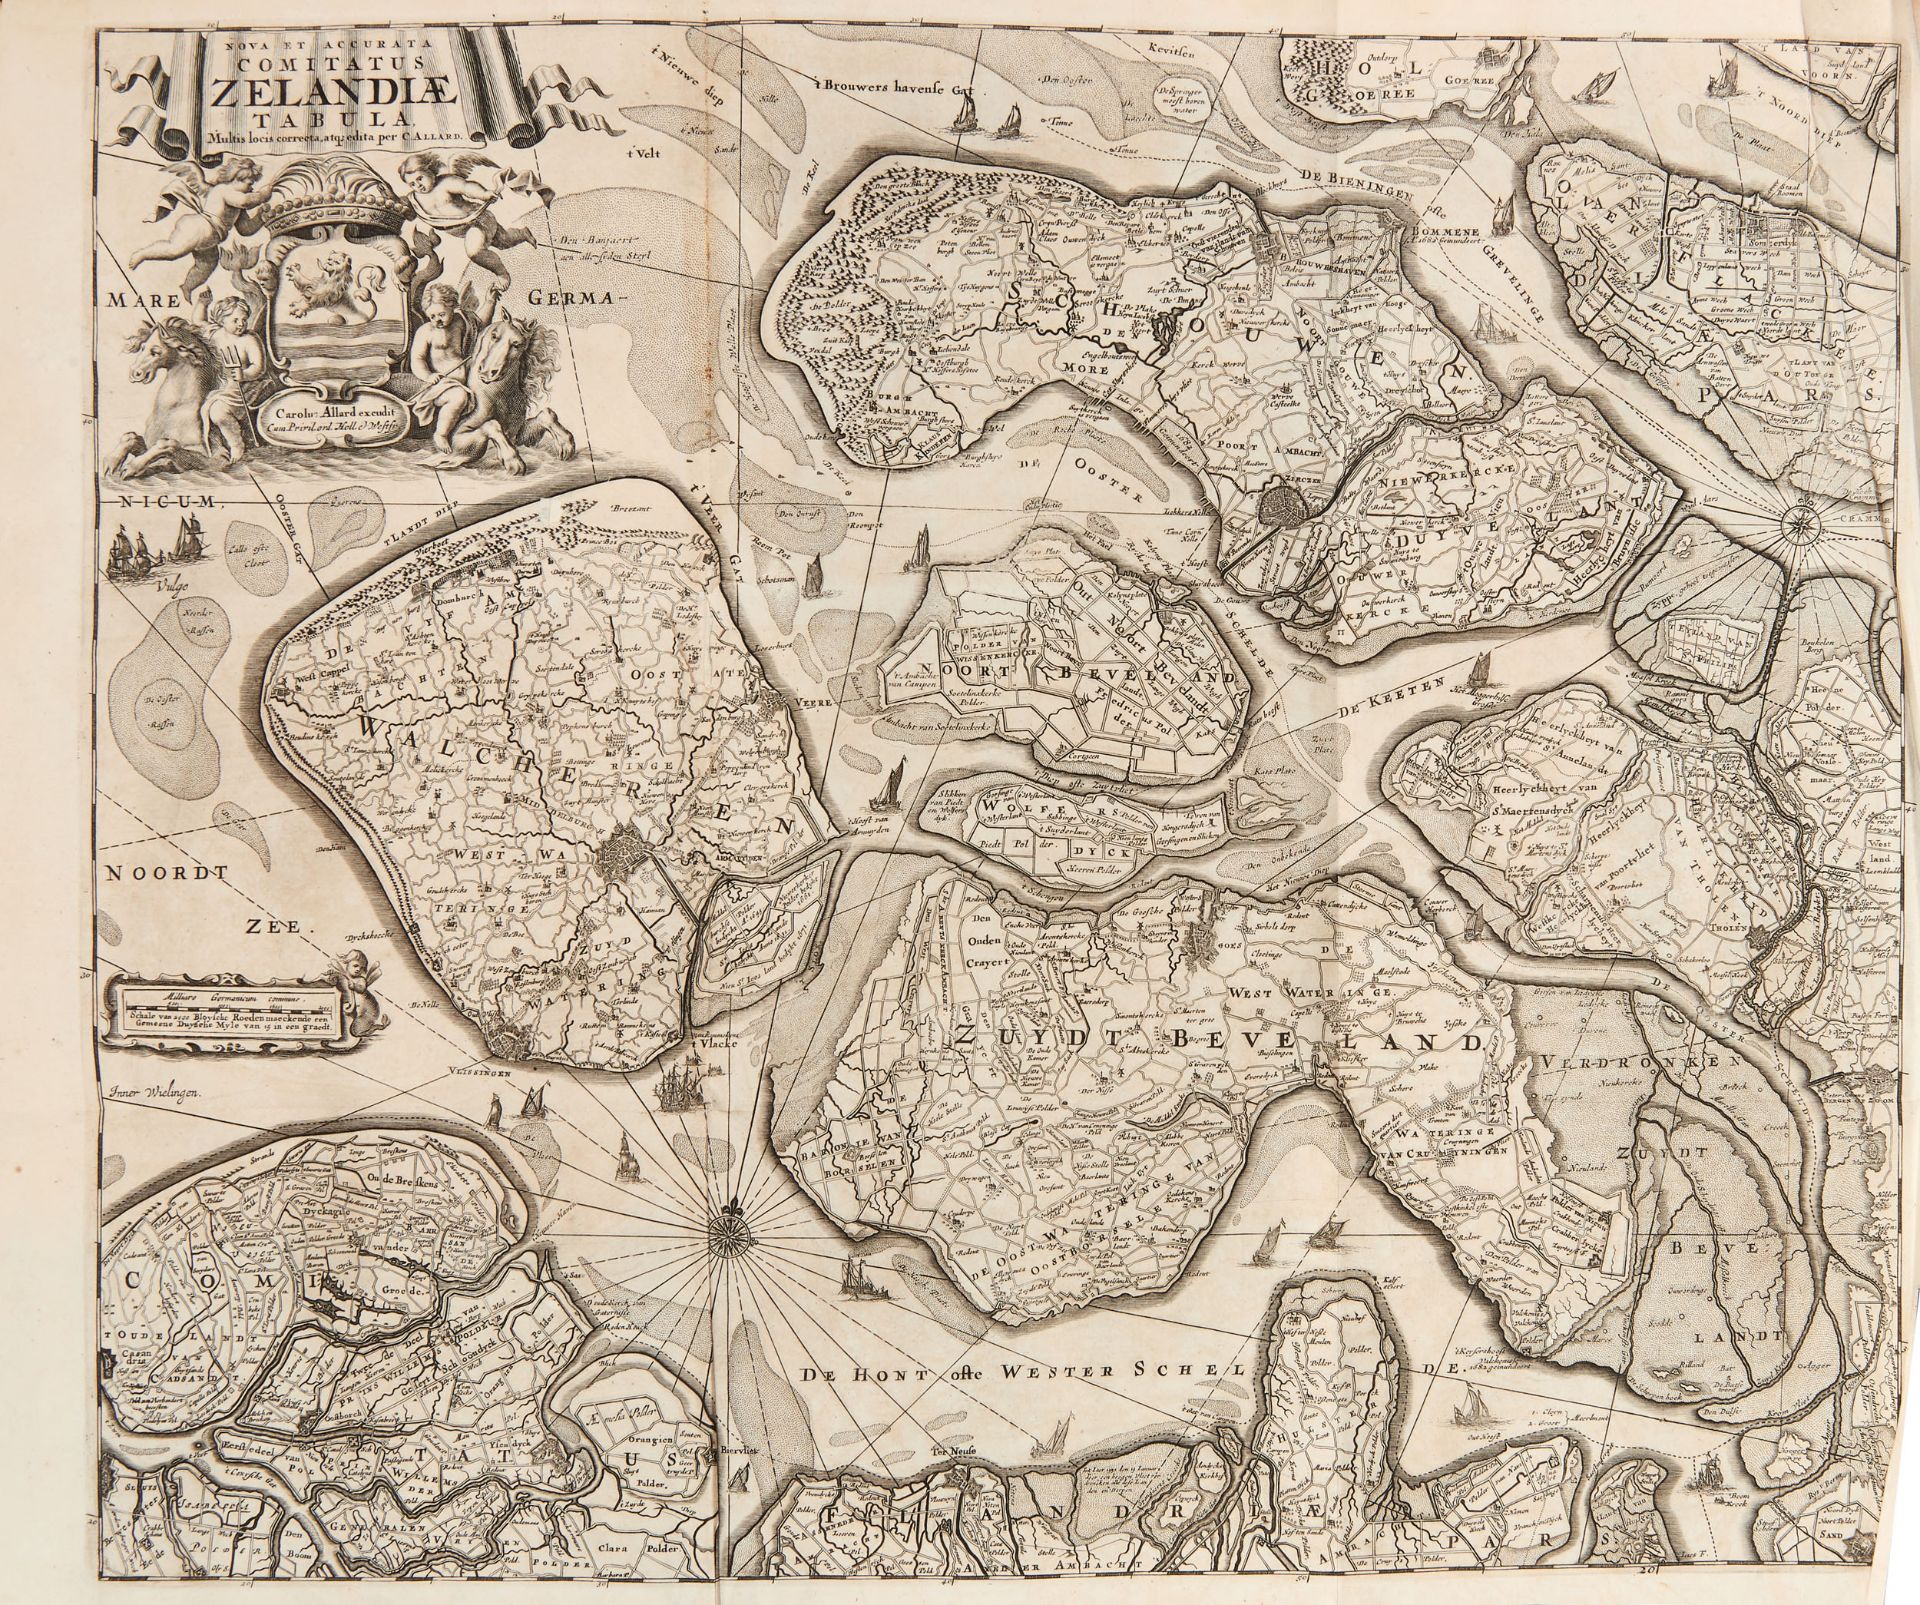 AA, Pieter van der (1659-1733) . La Galerie agreable du monde...cette partie comprend le volume - Image 2 of 6